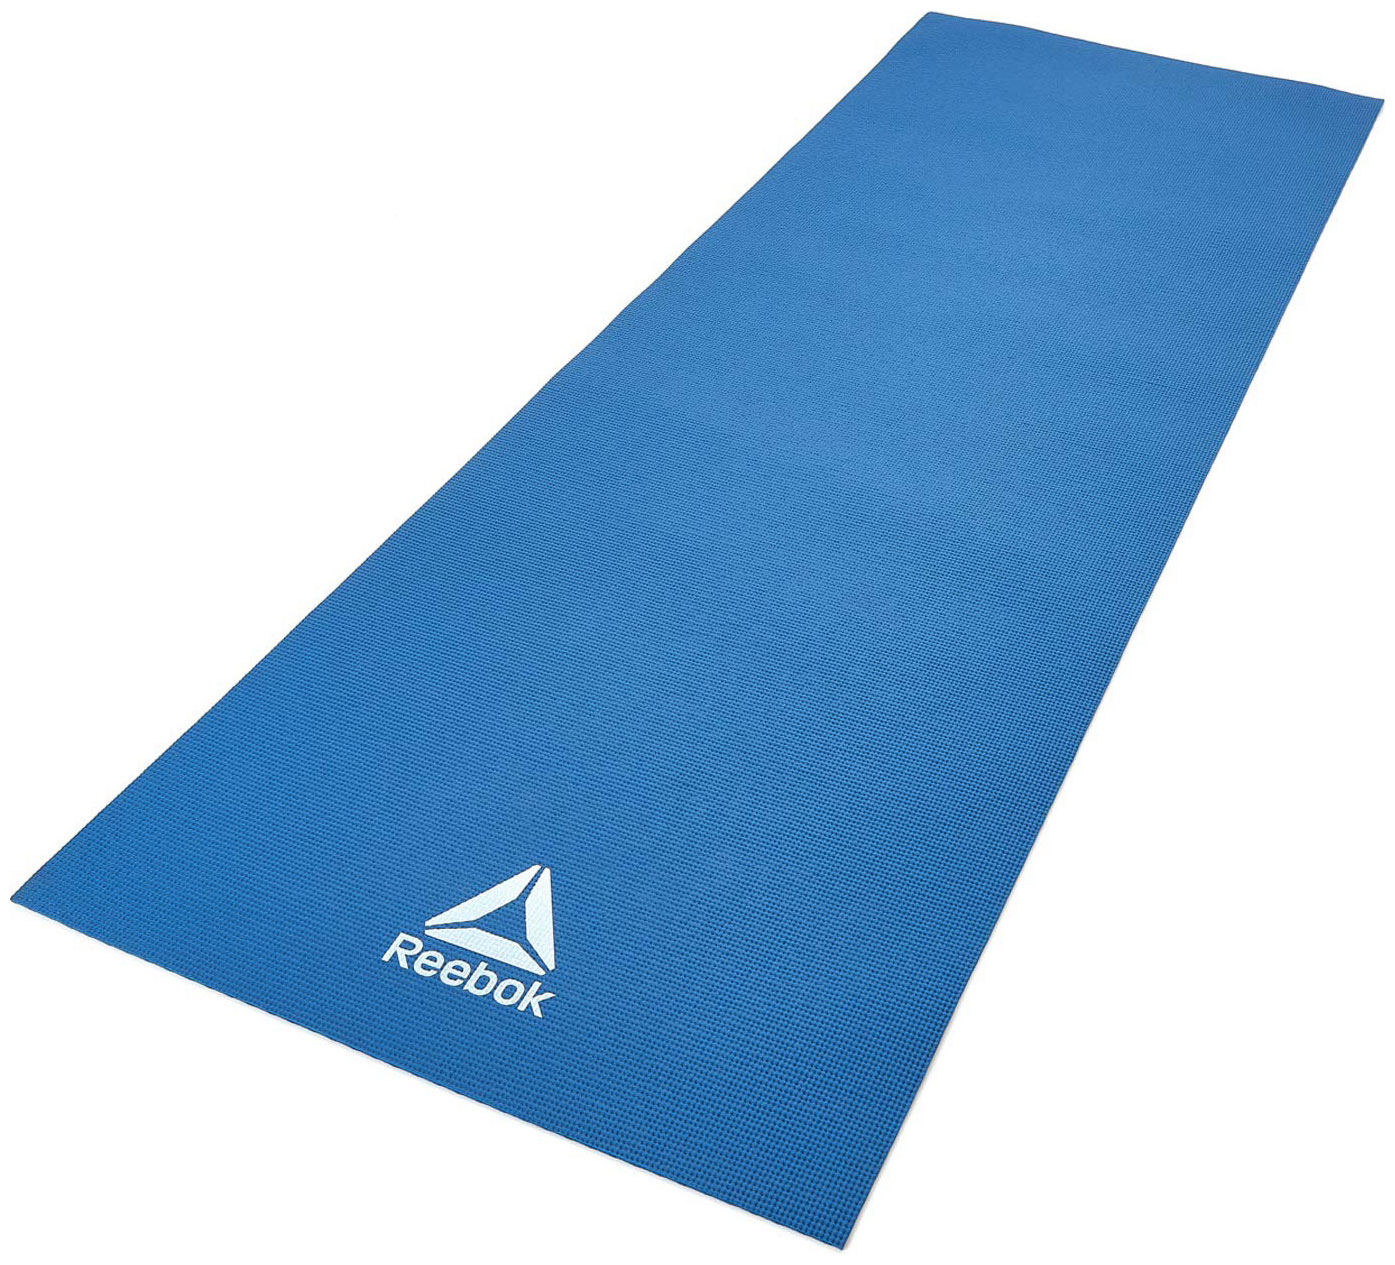 Тренировочный коврик (мат) для йоги Reebok RAYG-11022BL коврик для йоги reebok rayg 11022dd